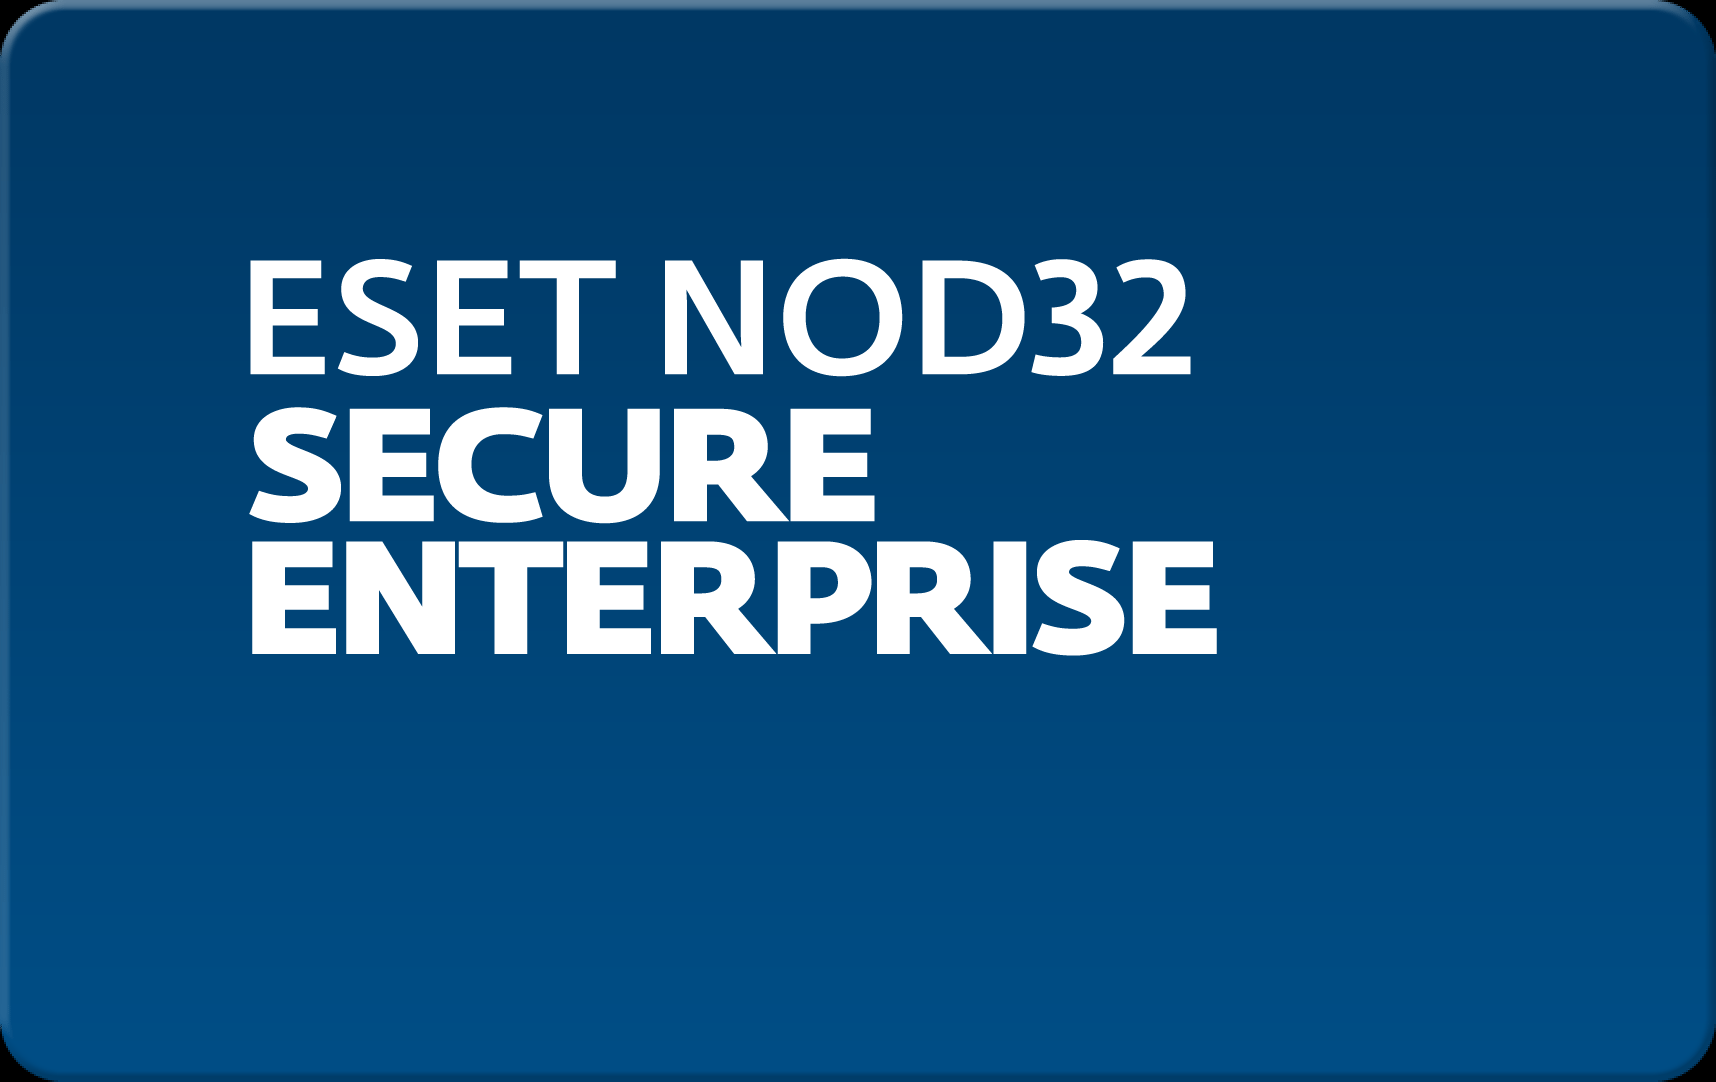        Eset NOD32 Secure Enterprise  143  NOD32-ESE-NS-1-143  #1